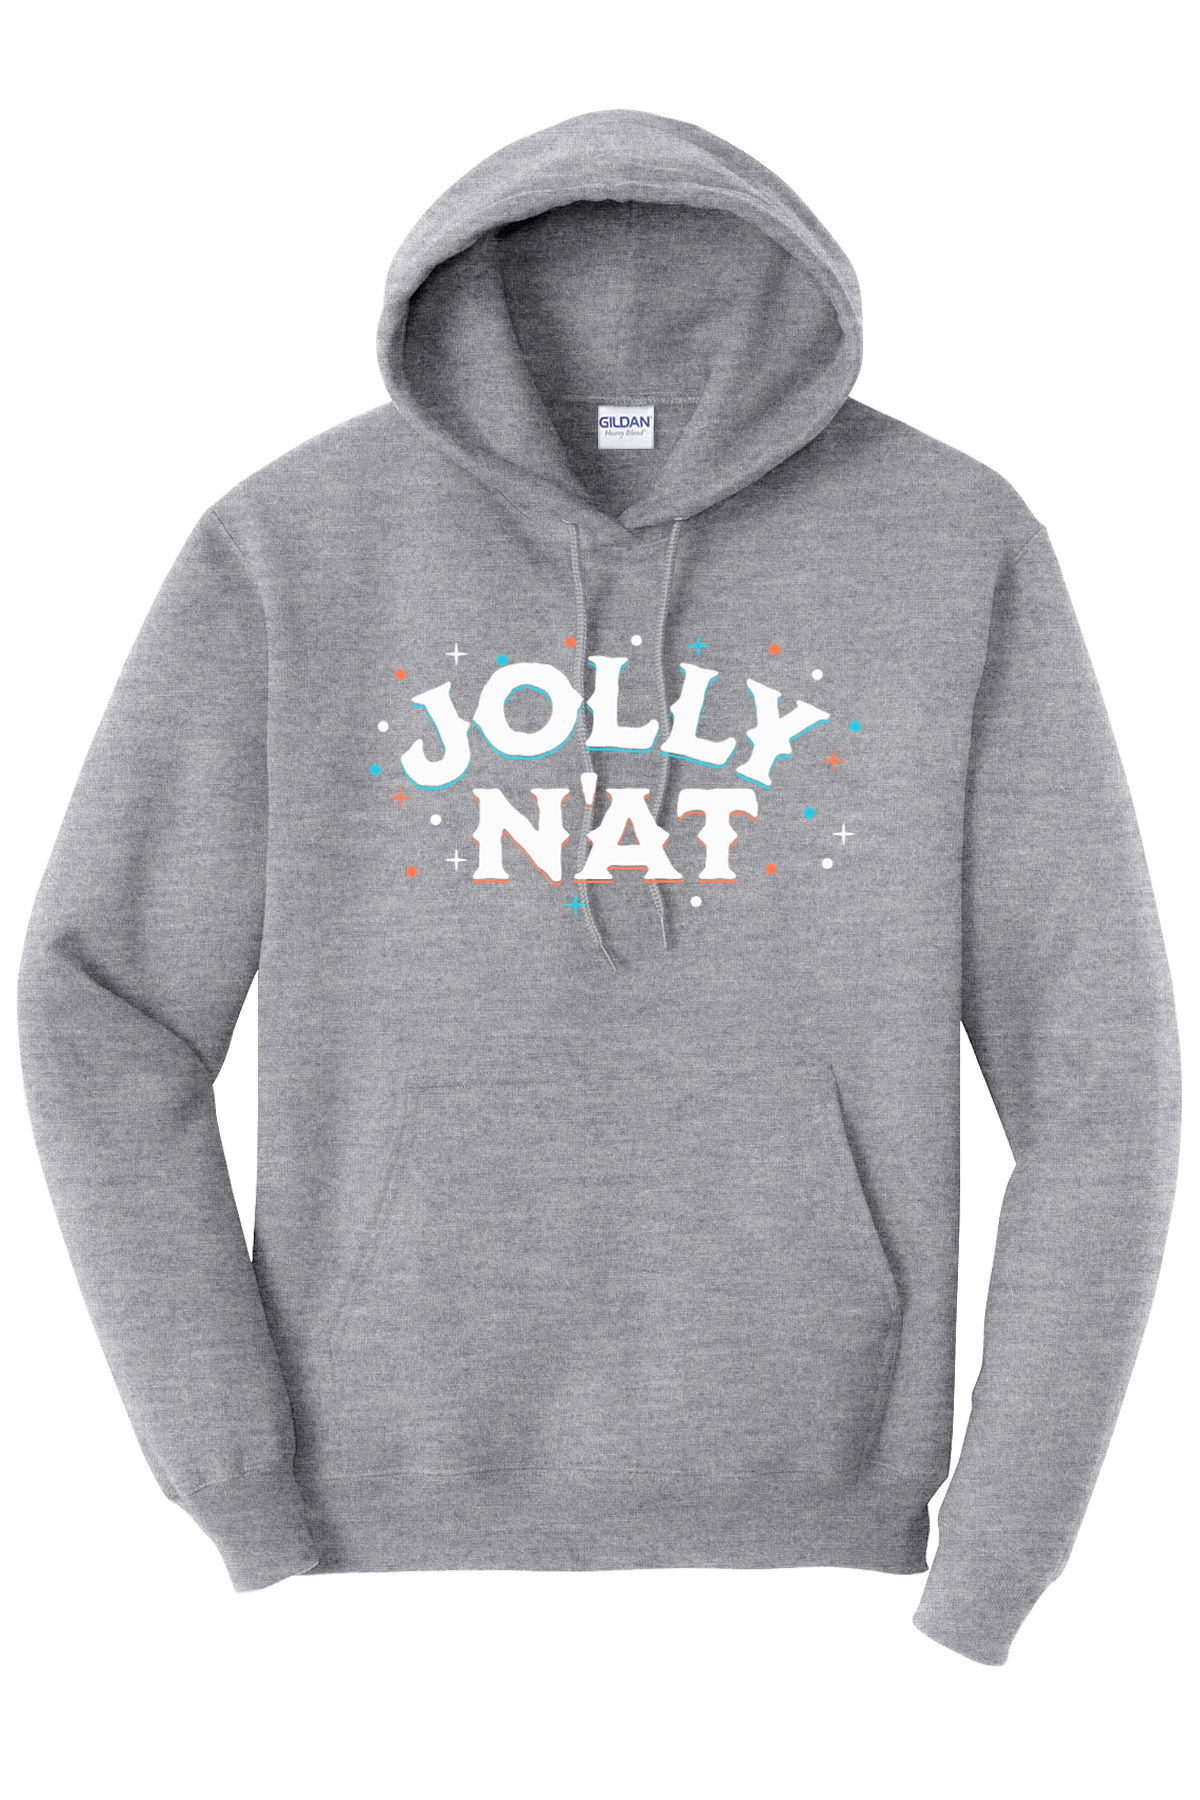 Jolly N'at - Hoodie - Yinzylvania